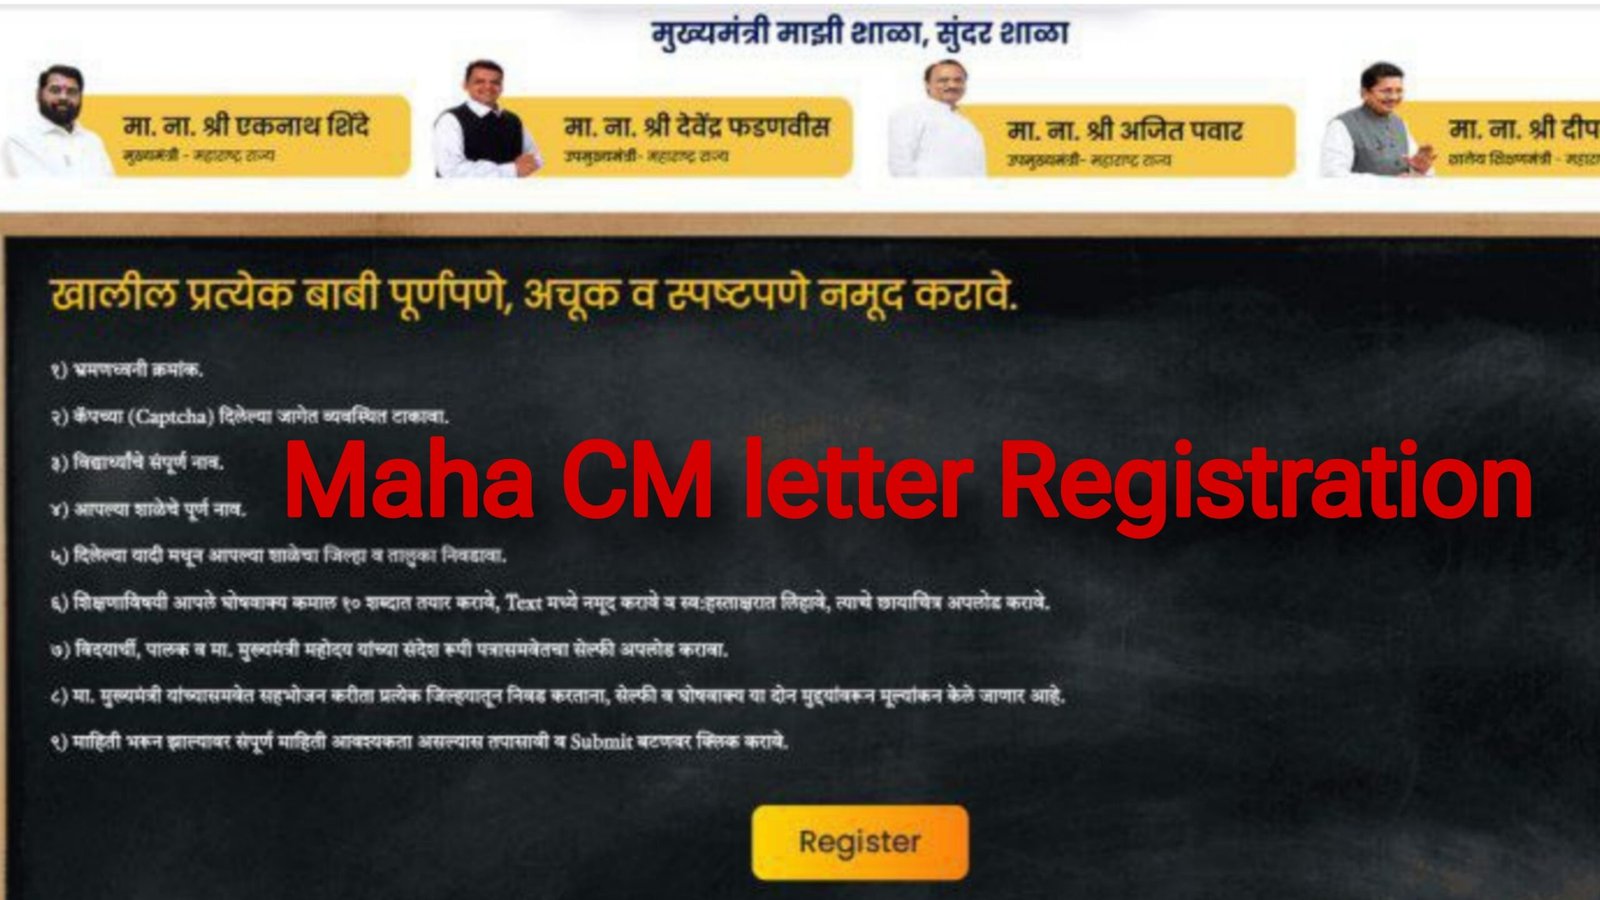 Mahacmletter.in Maha CM letter Registration